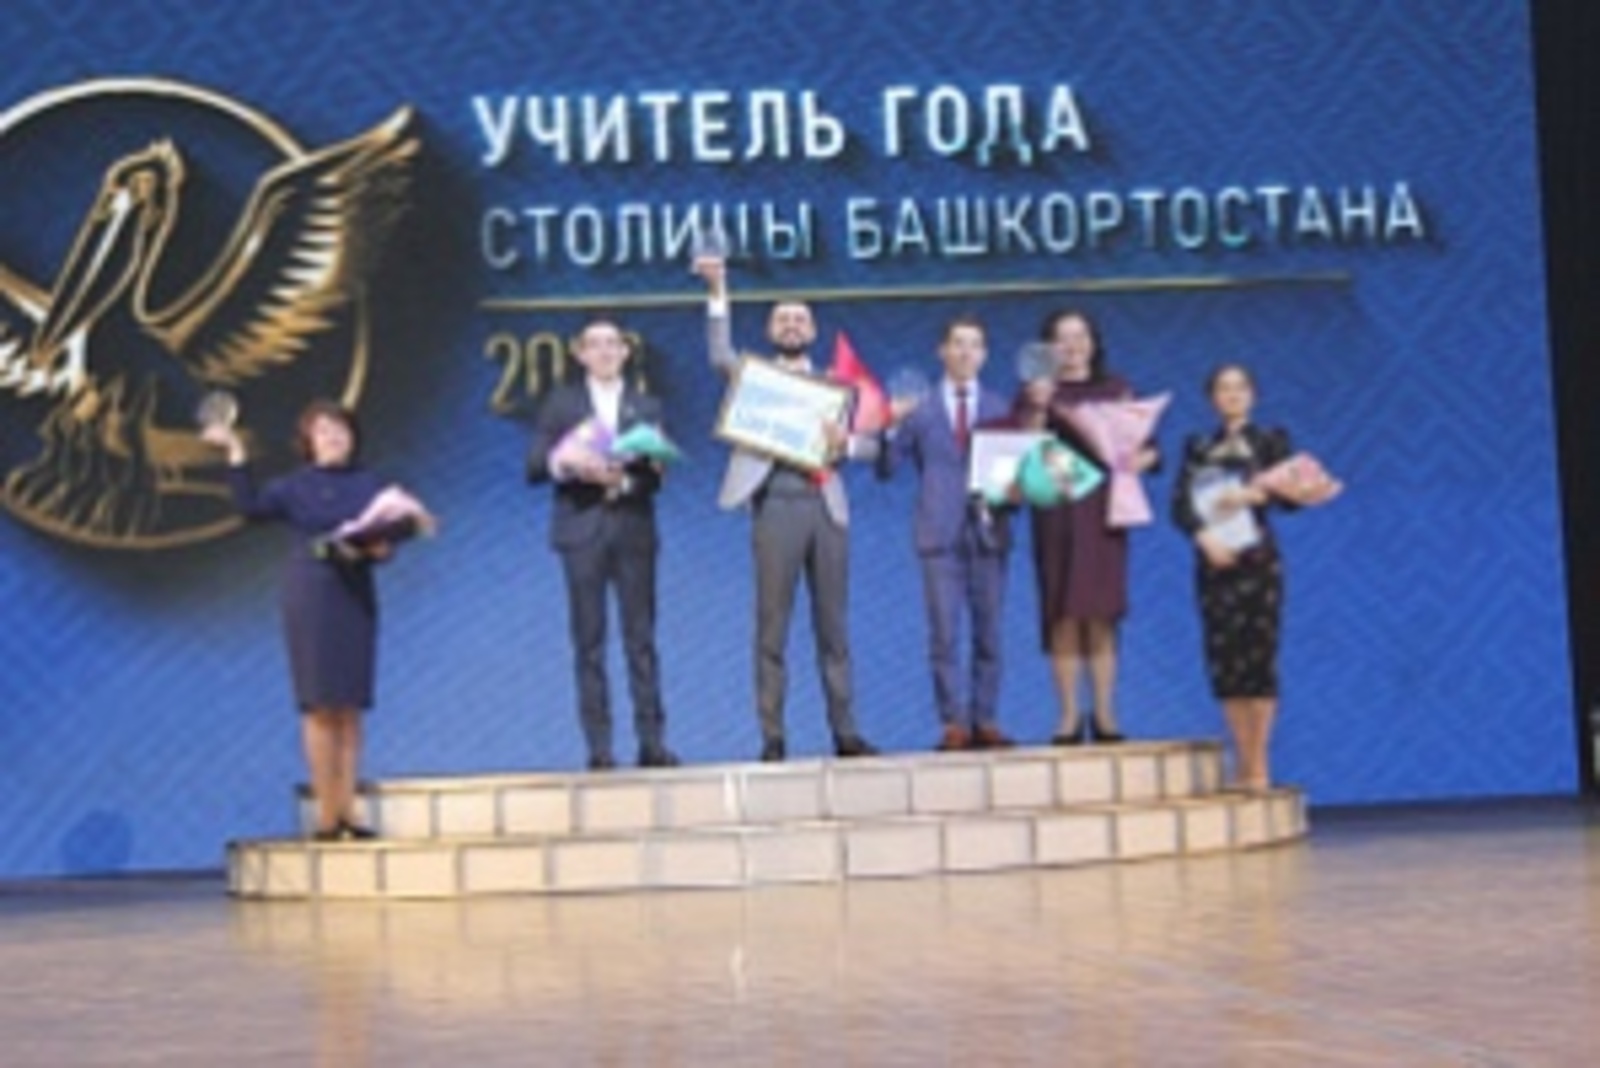 Учитель математики - абсолютный победитель конкурса «Учителя года столицы Башкортостана»